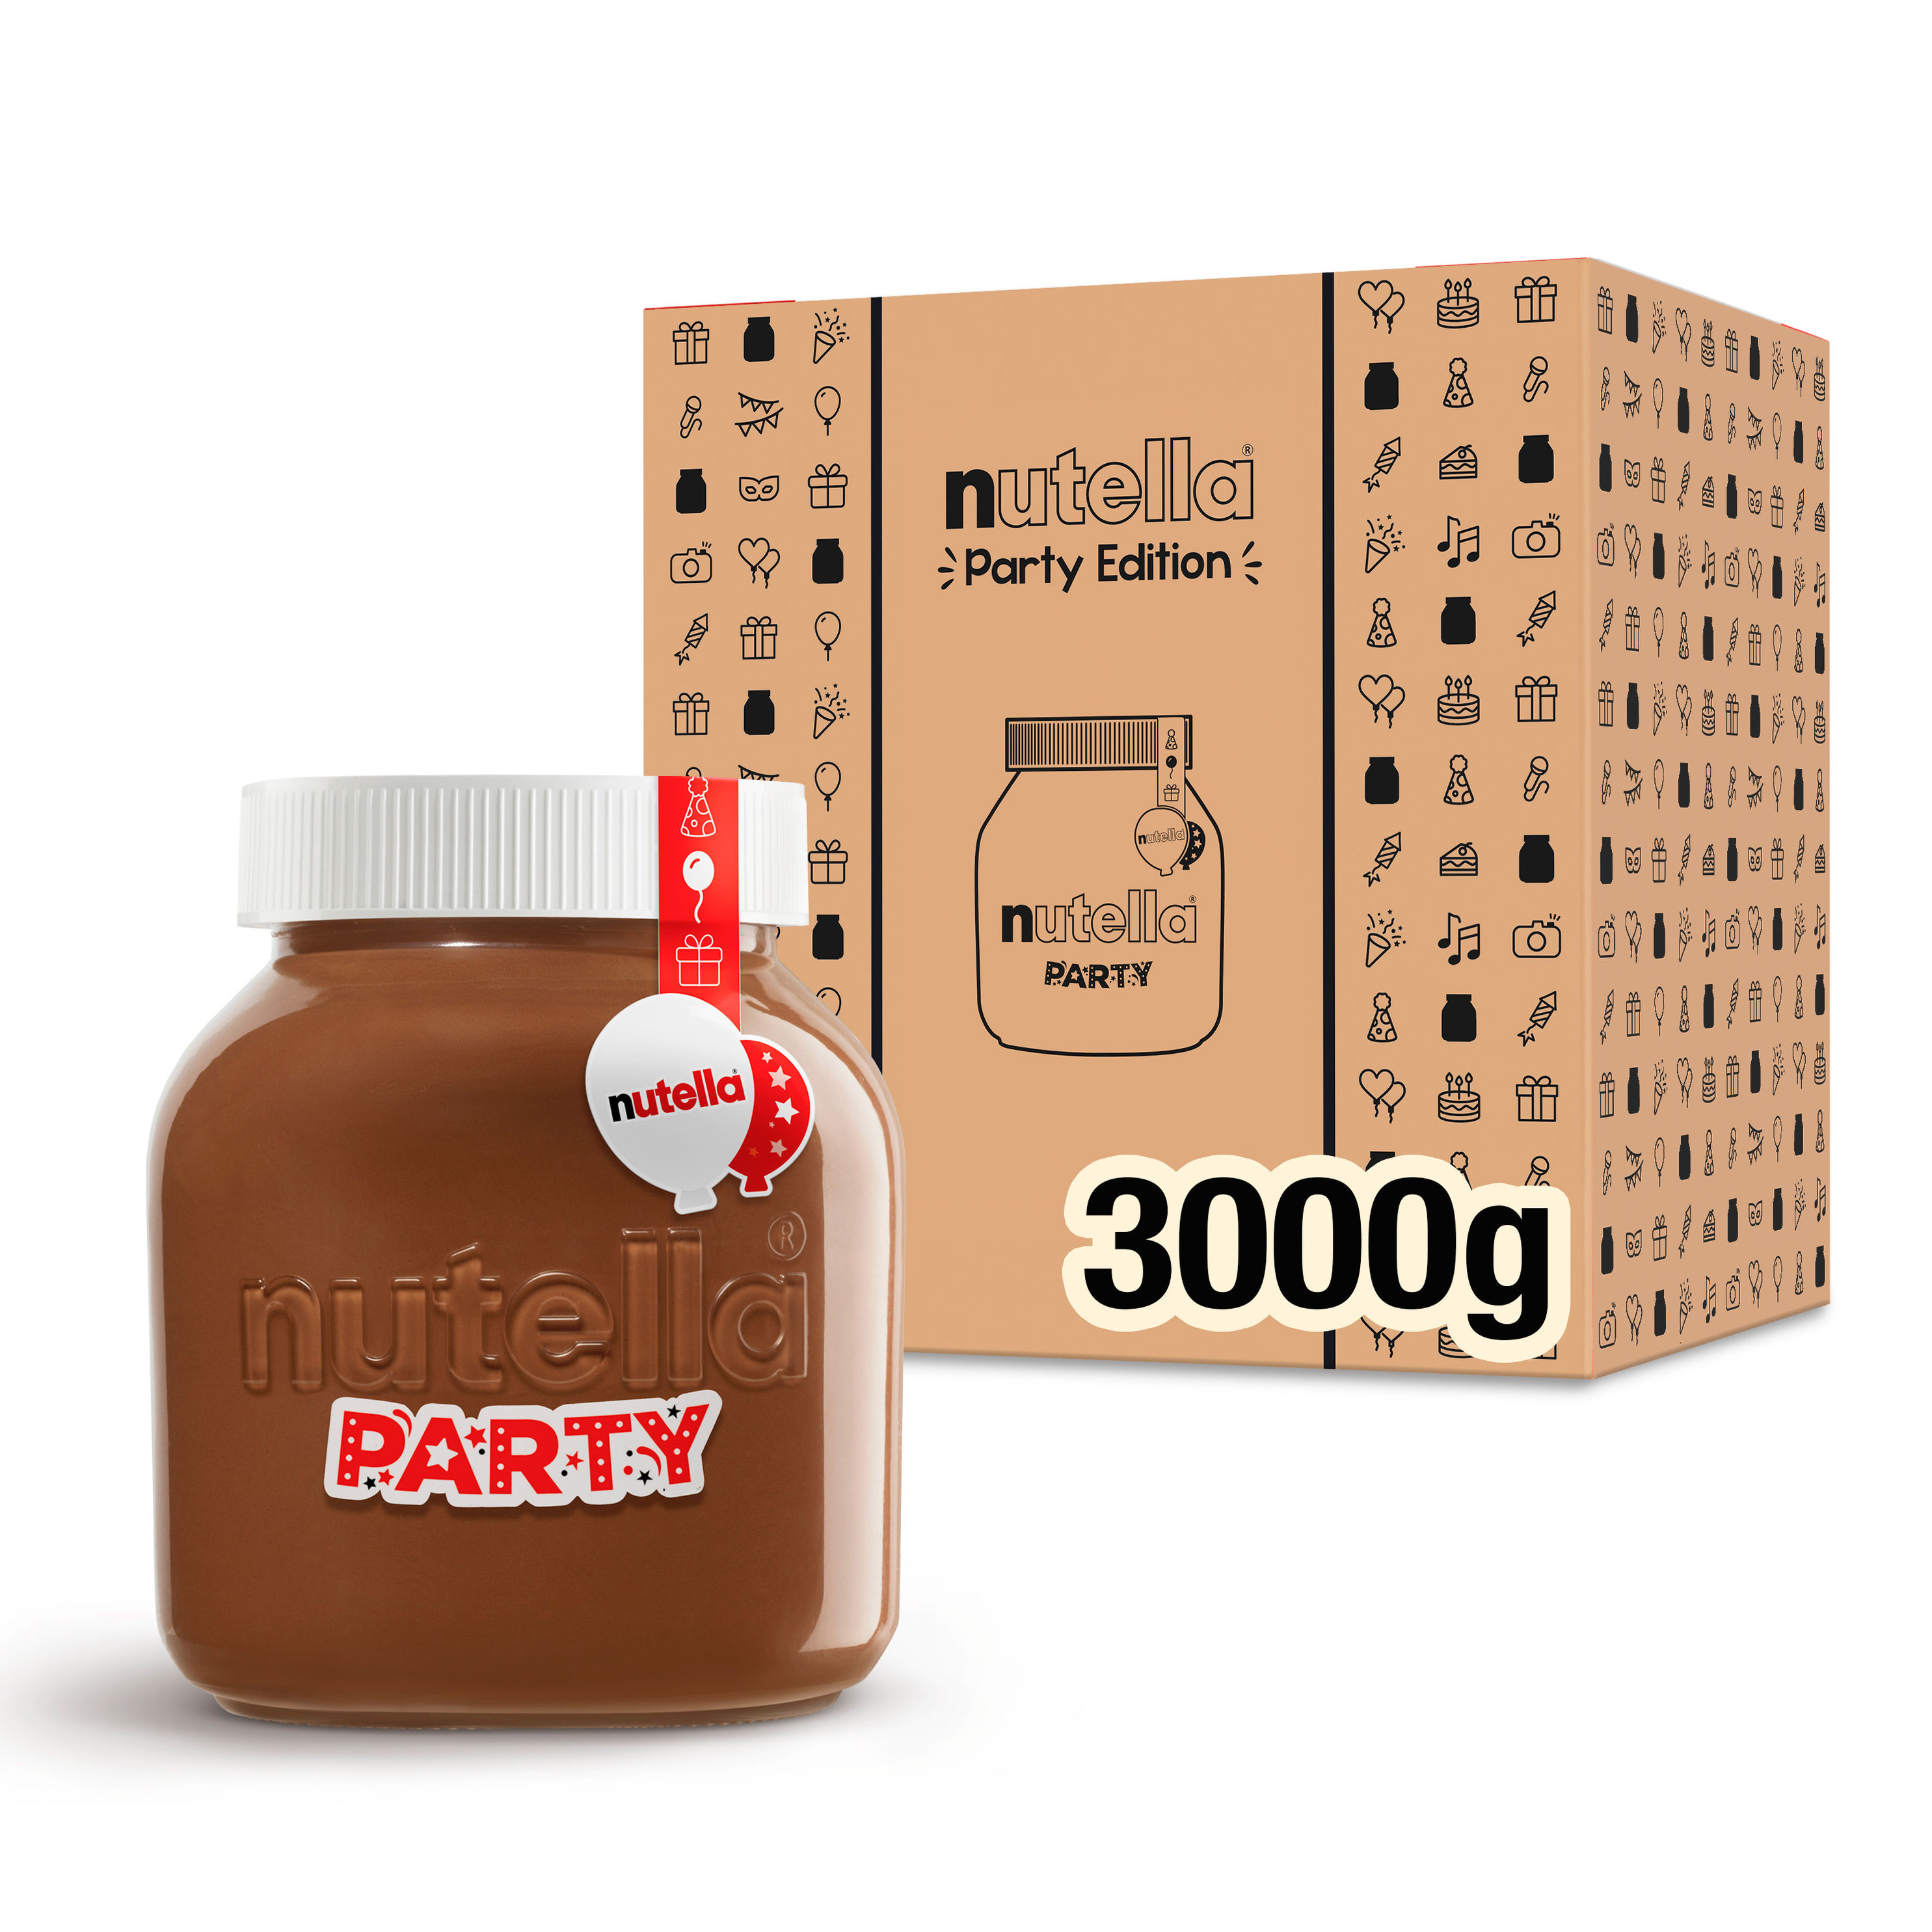 nutella Party Edition 3 kg Glas jetzt bei Weltbild.de bestellen